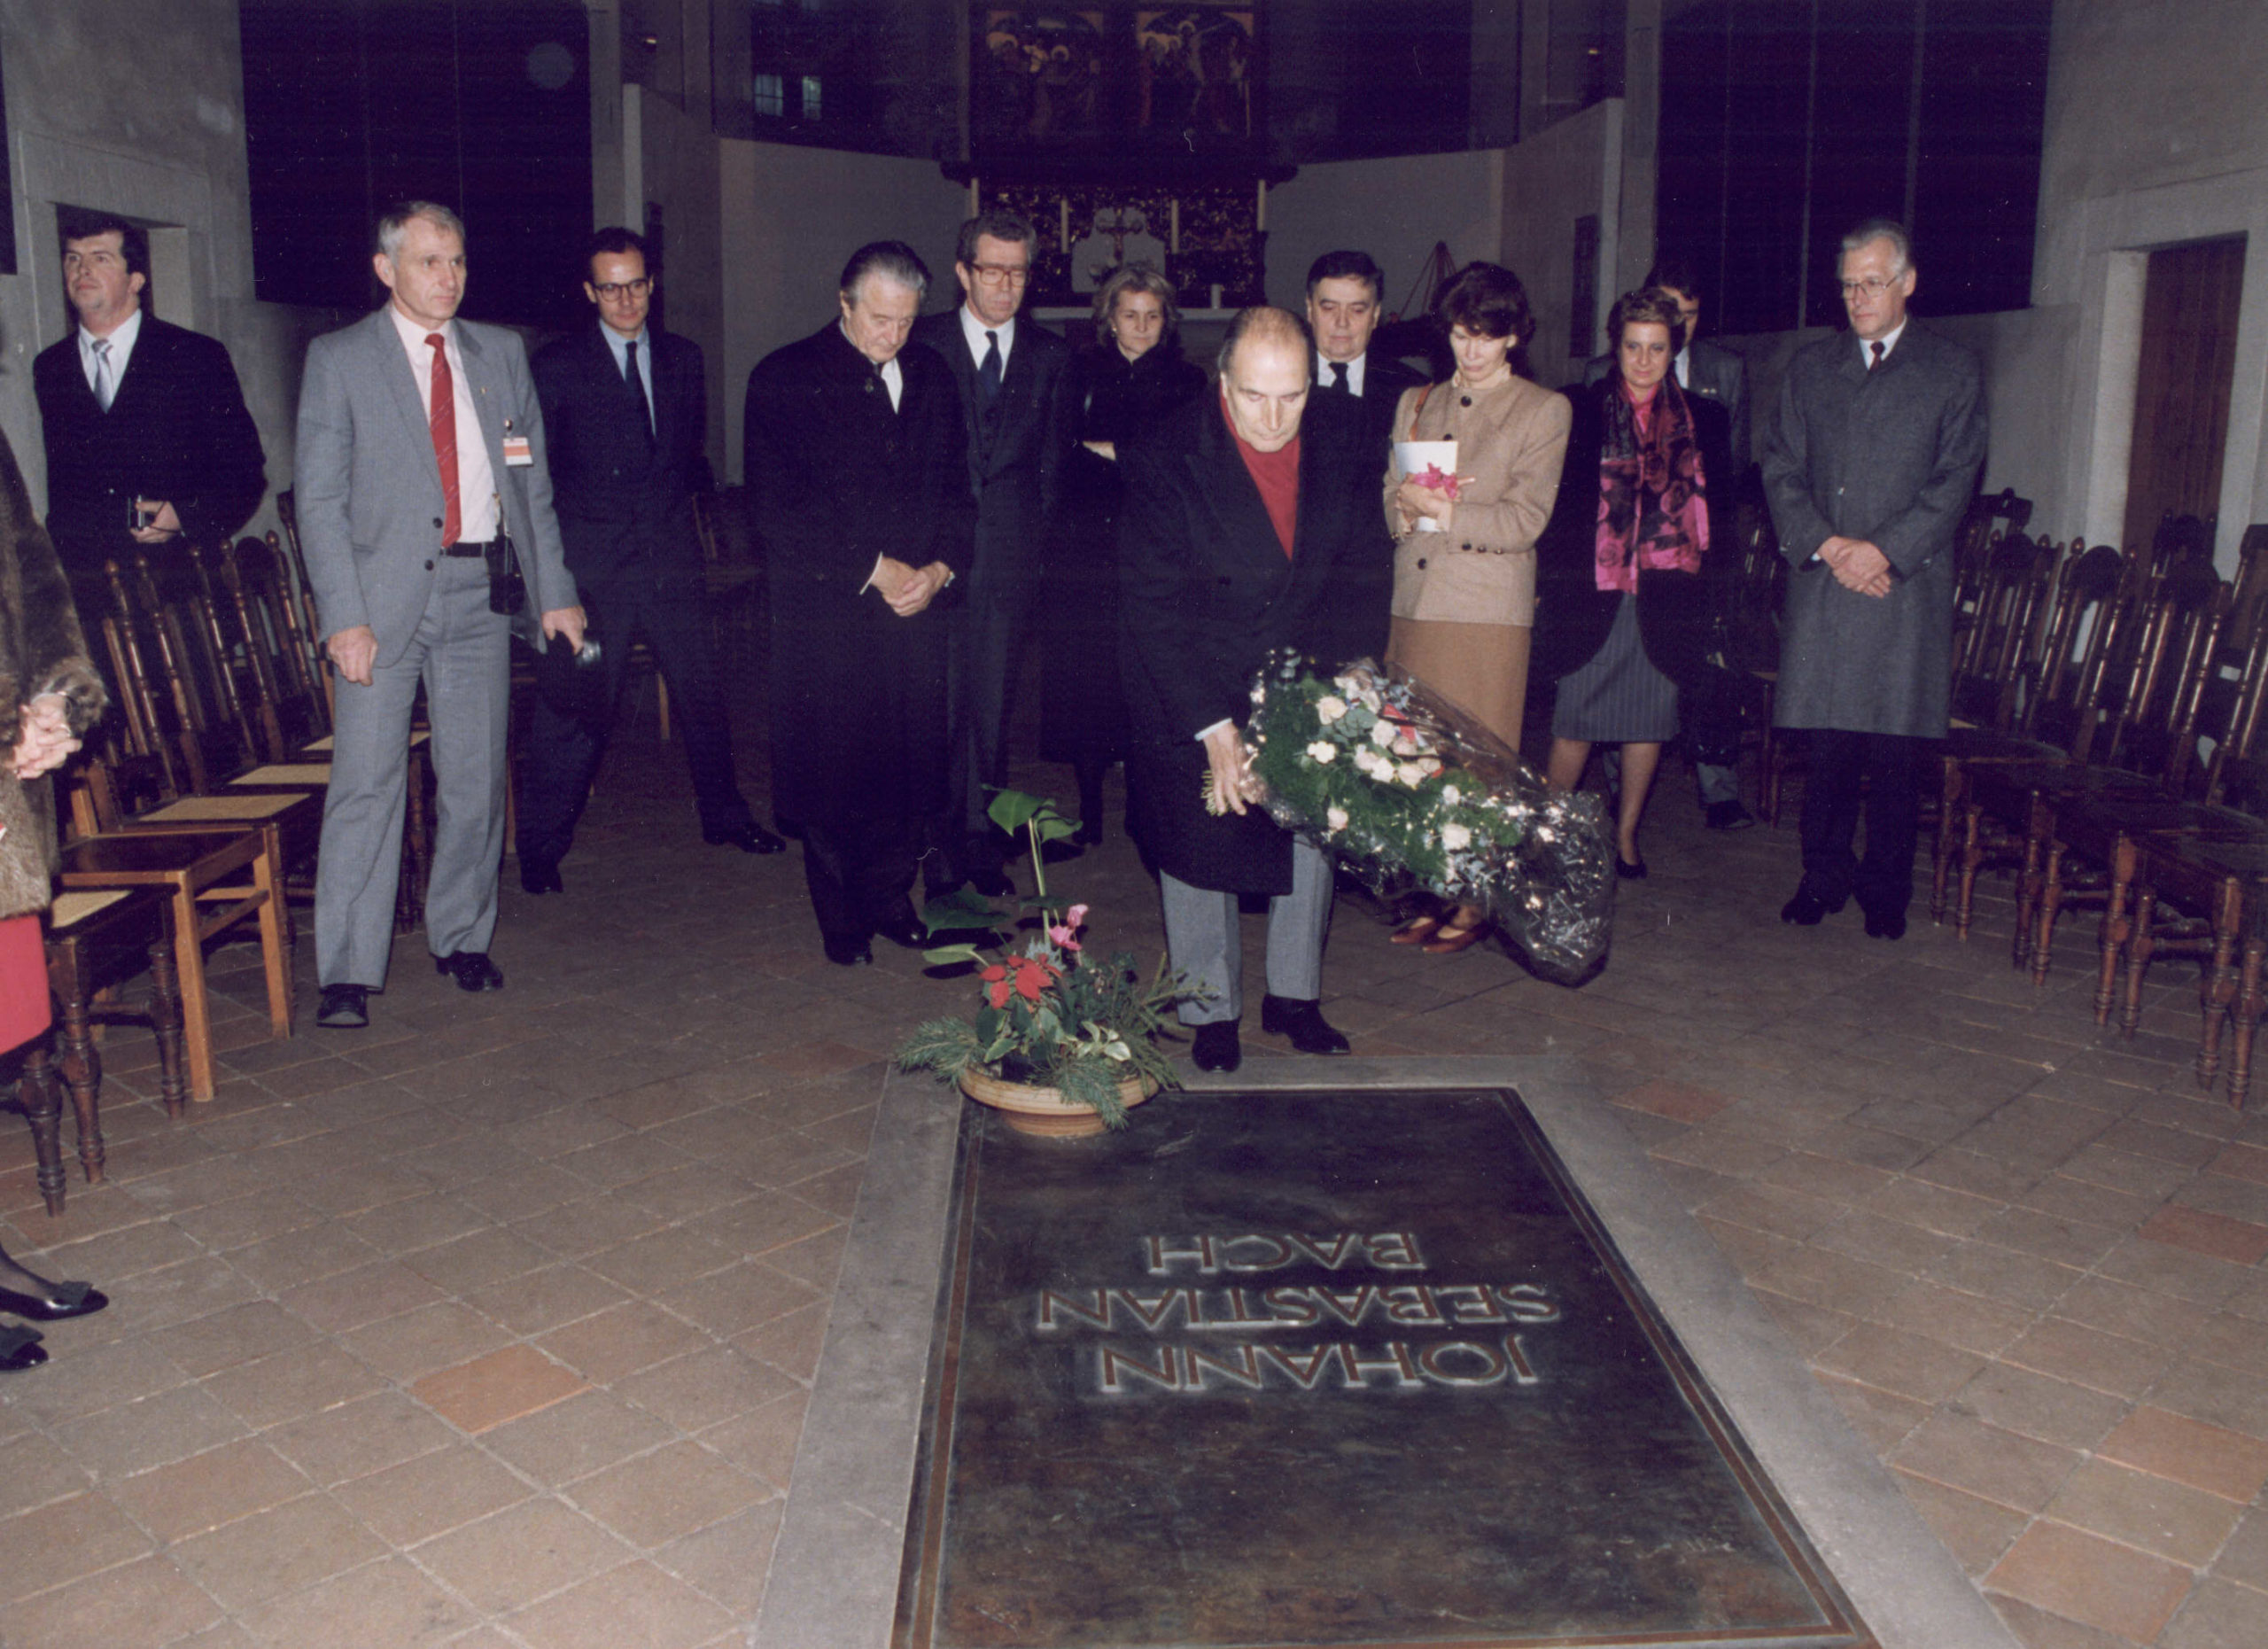 Le Président de la République dépose un bouquet sur la tombe de Johann Sebastian Bach dans l'église Saint-Thomas à l'occasion de la visite officielle en RDA le 20 décembre 1989